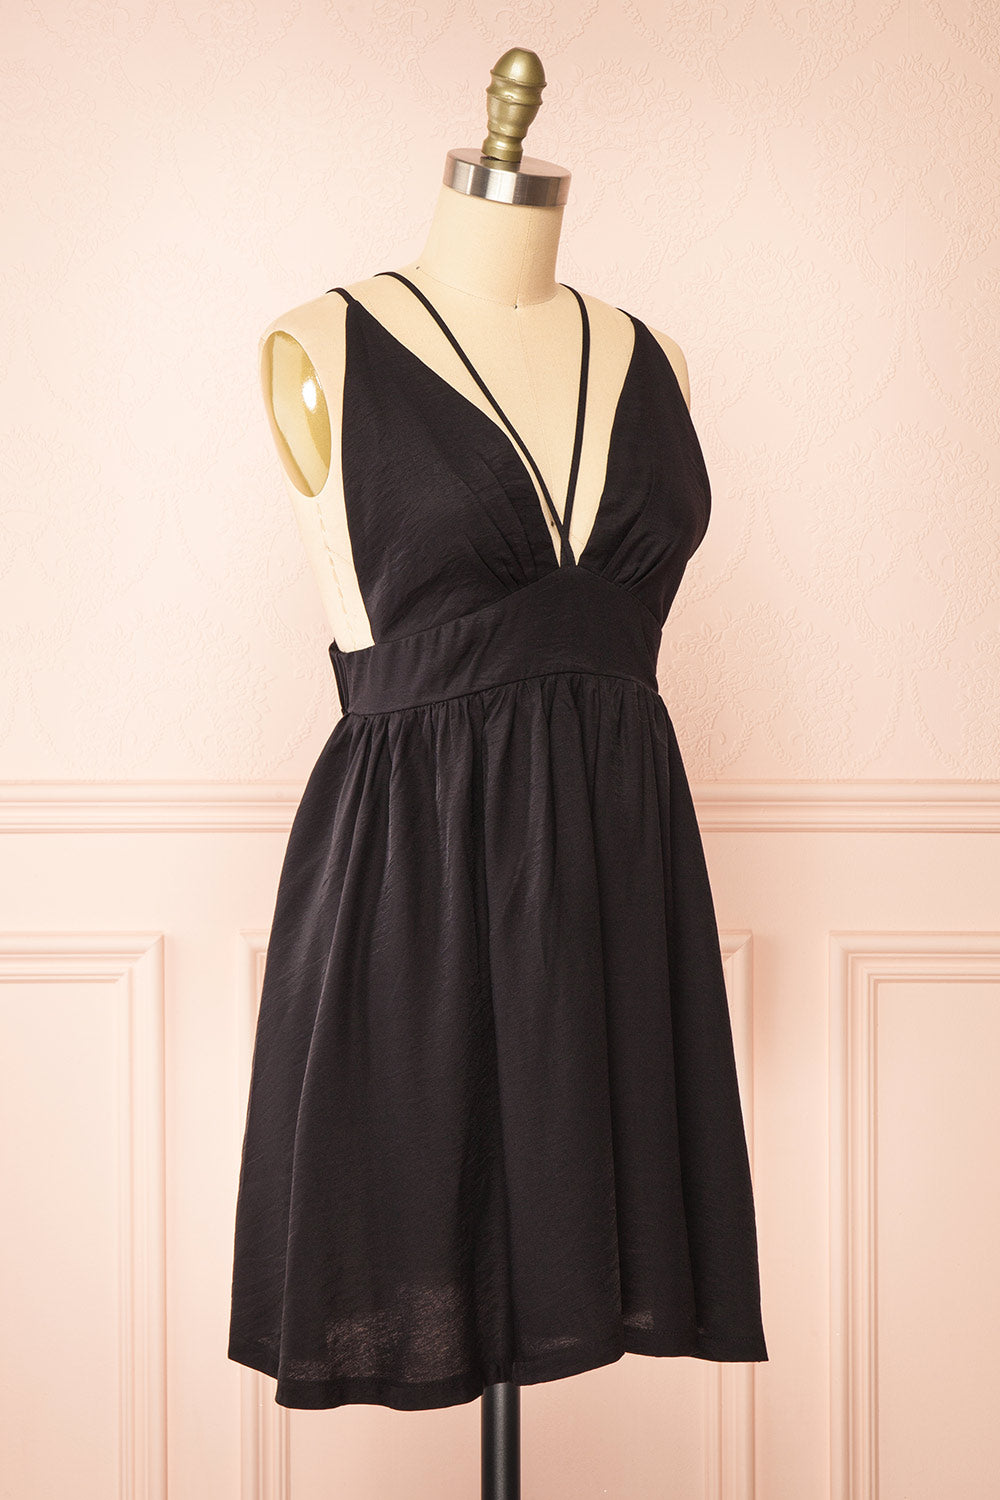 Tillie Short Black Plunging Neckline Dress | Boutique 1861 side view